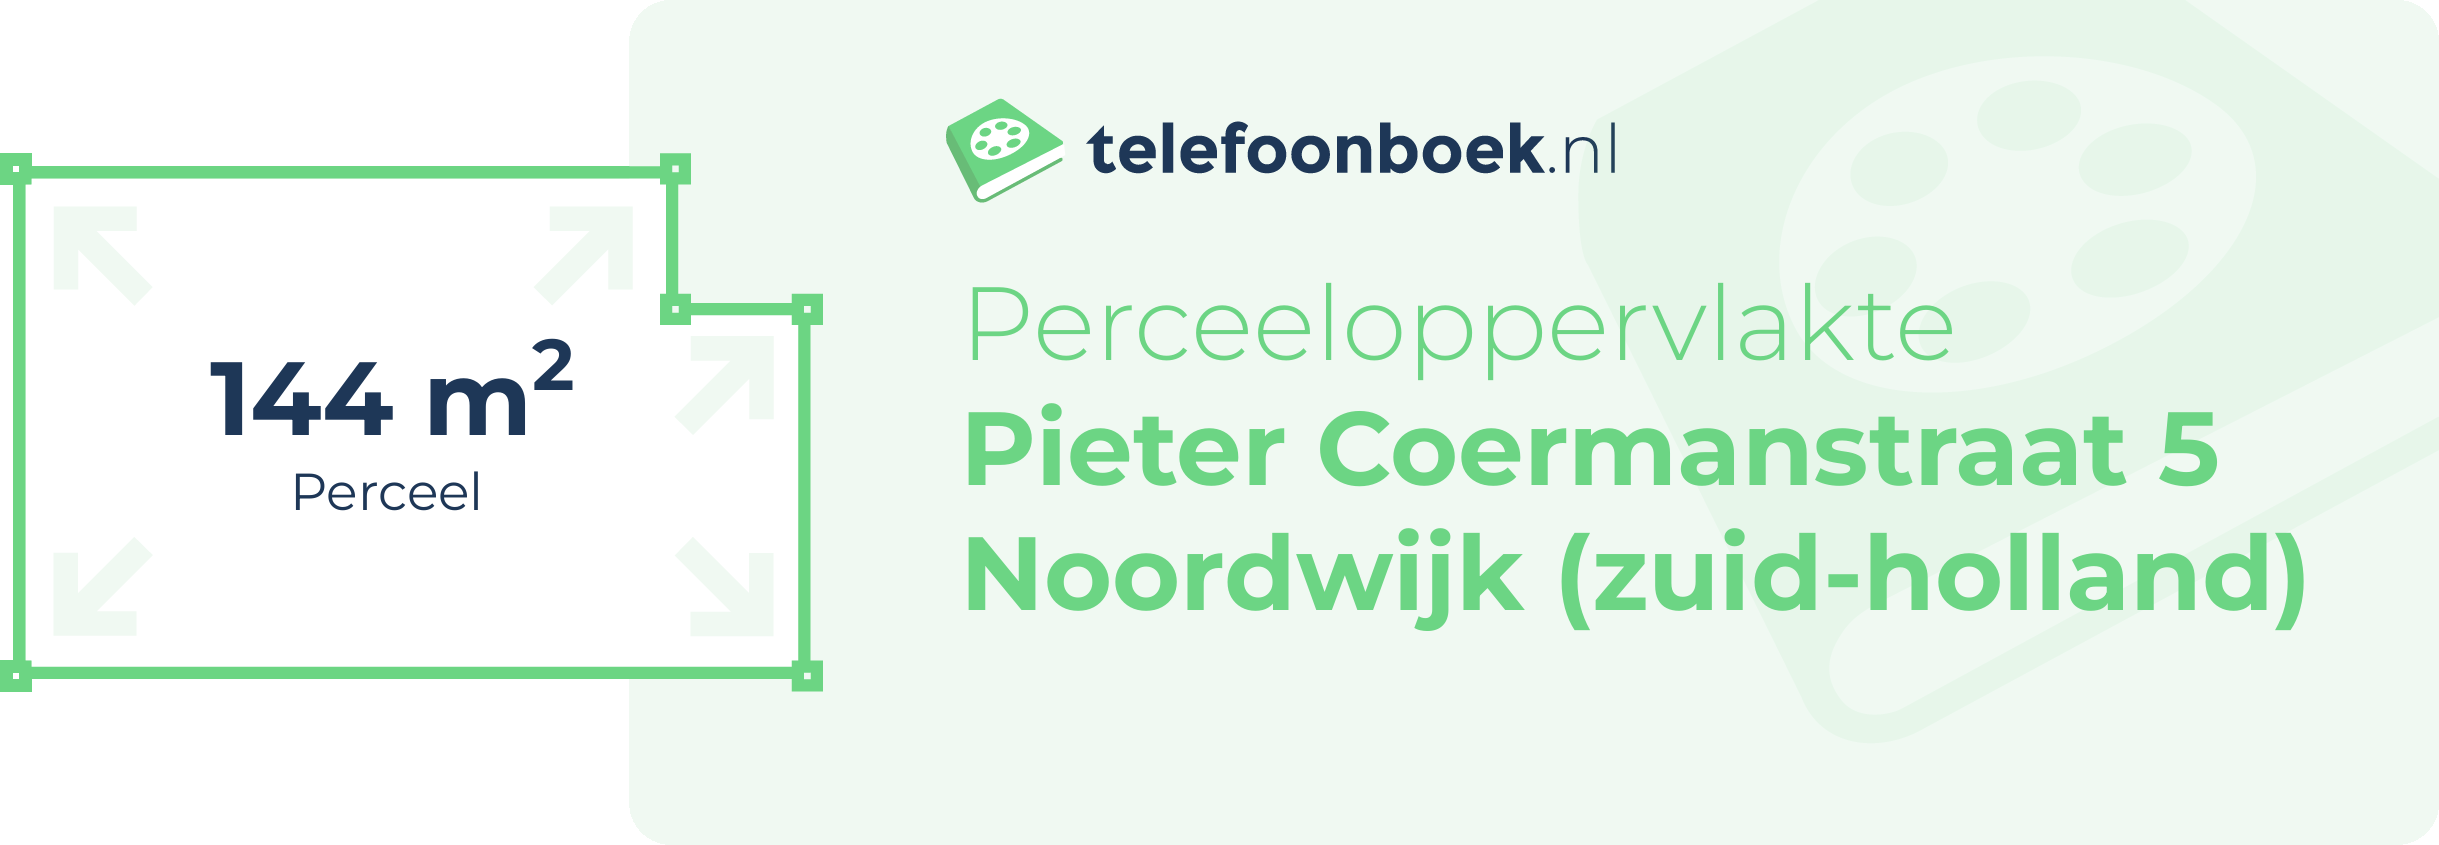 Perceeloppervlakte Pieter Coermanstraat 5 Noordwijk (Zuid-Holland)